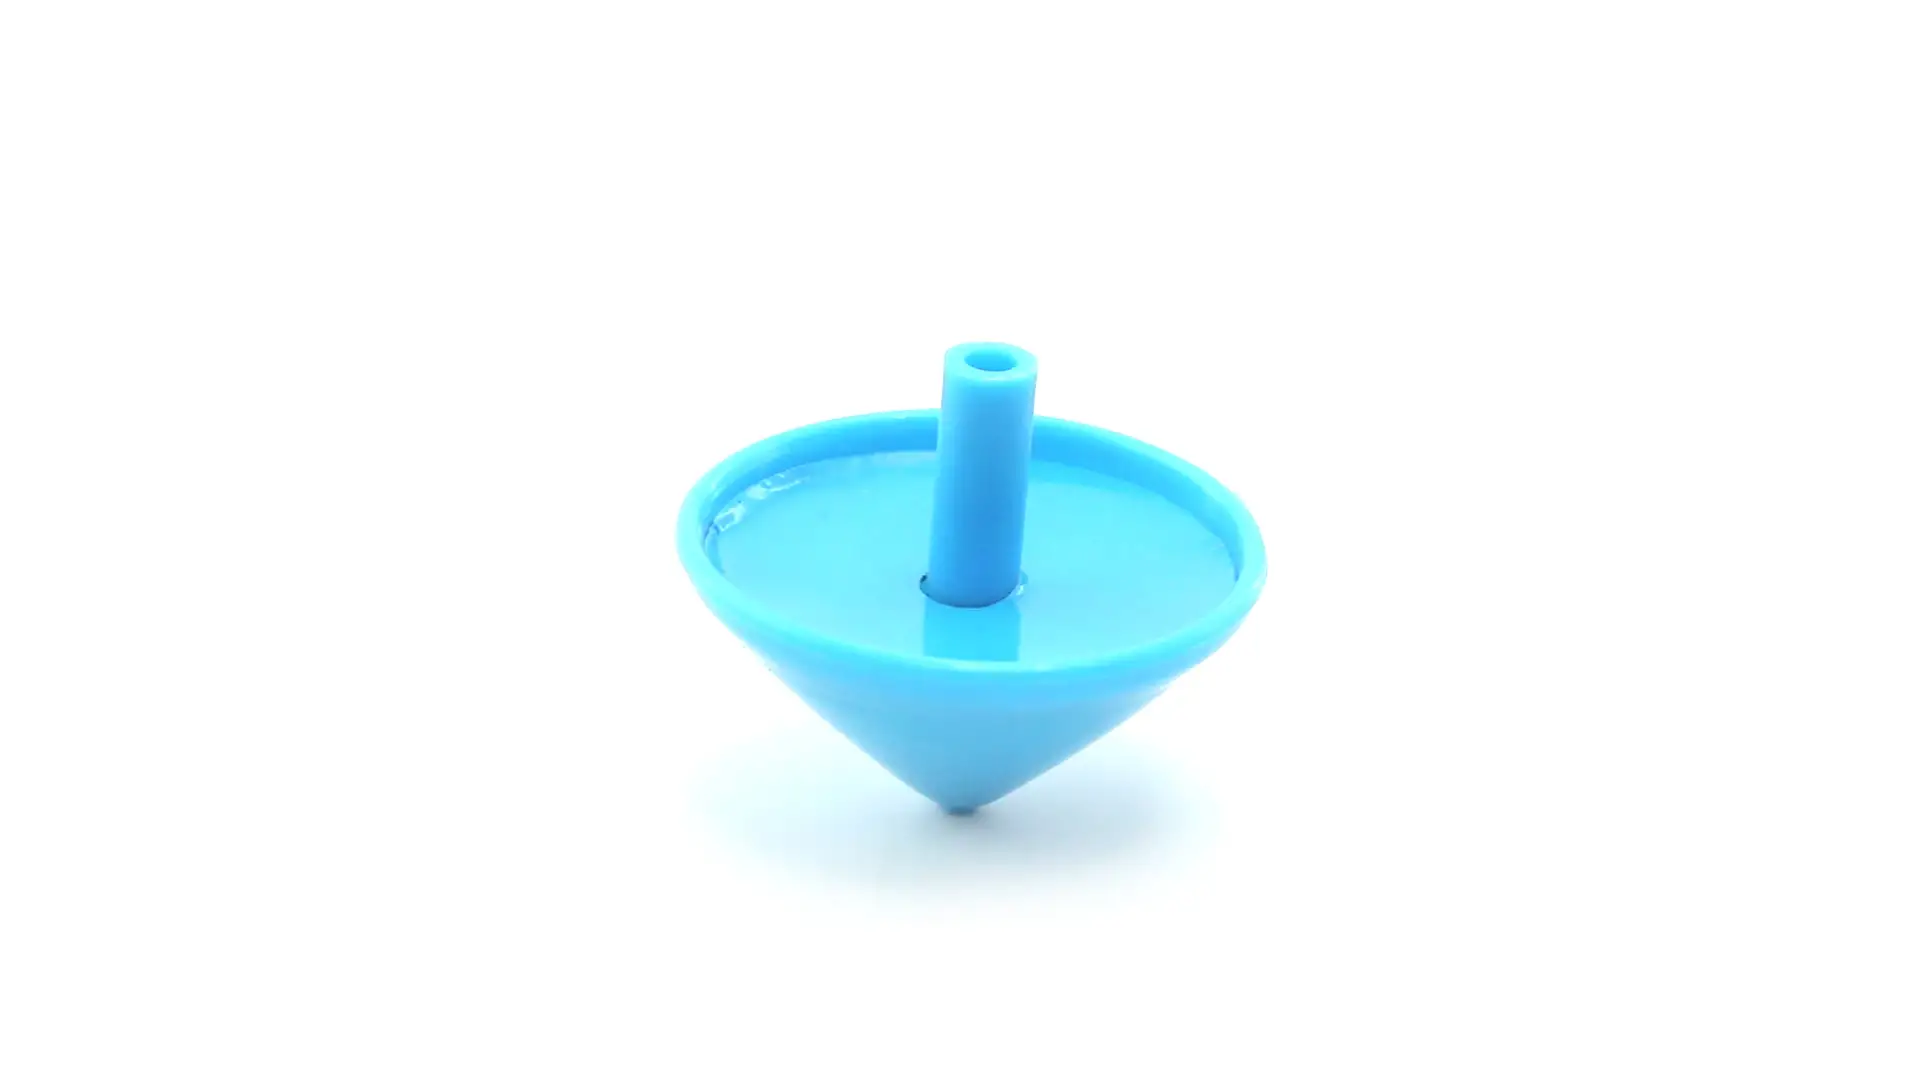 Trottola in Plastica Personalizzata Ideale come Gadget Feste